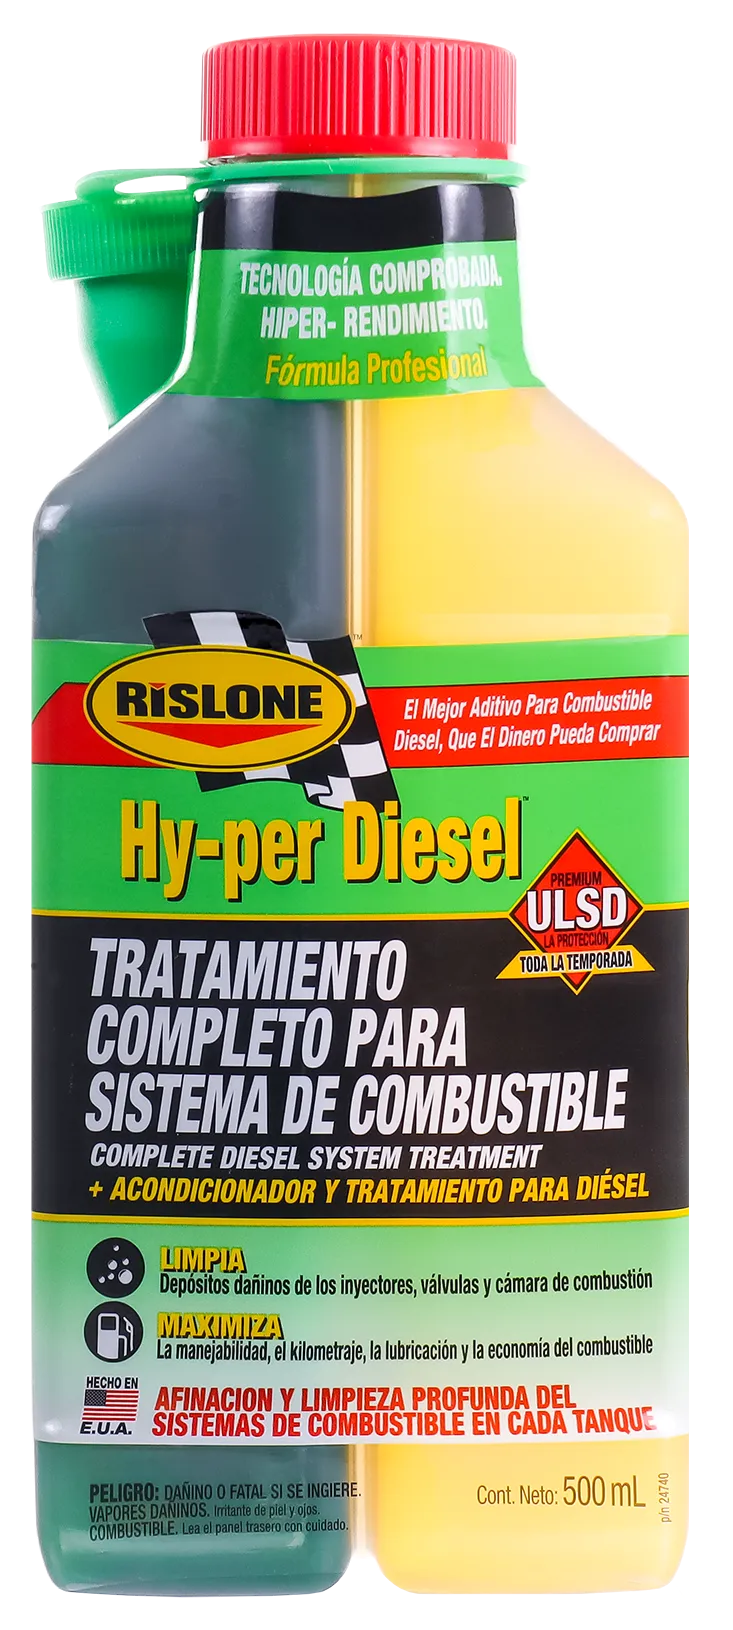 Limpiador de inyectores diesel y gasolina - Sersan